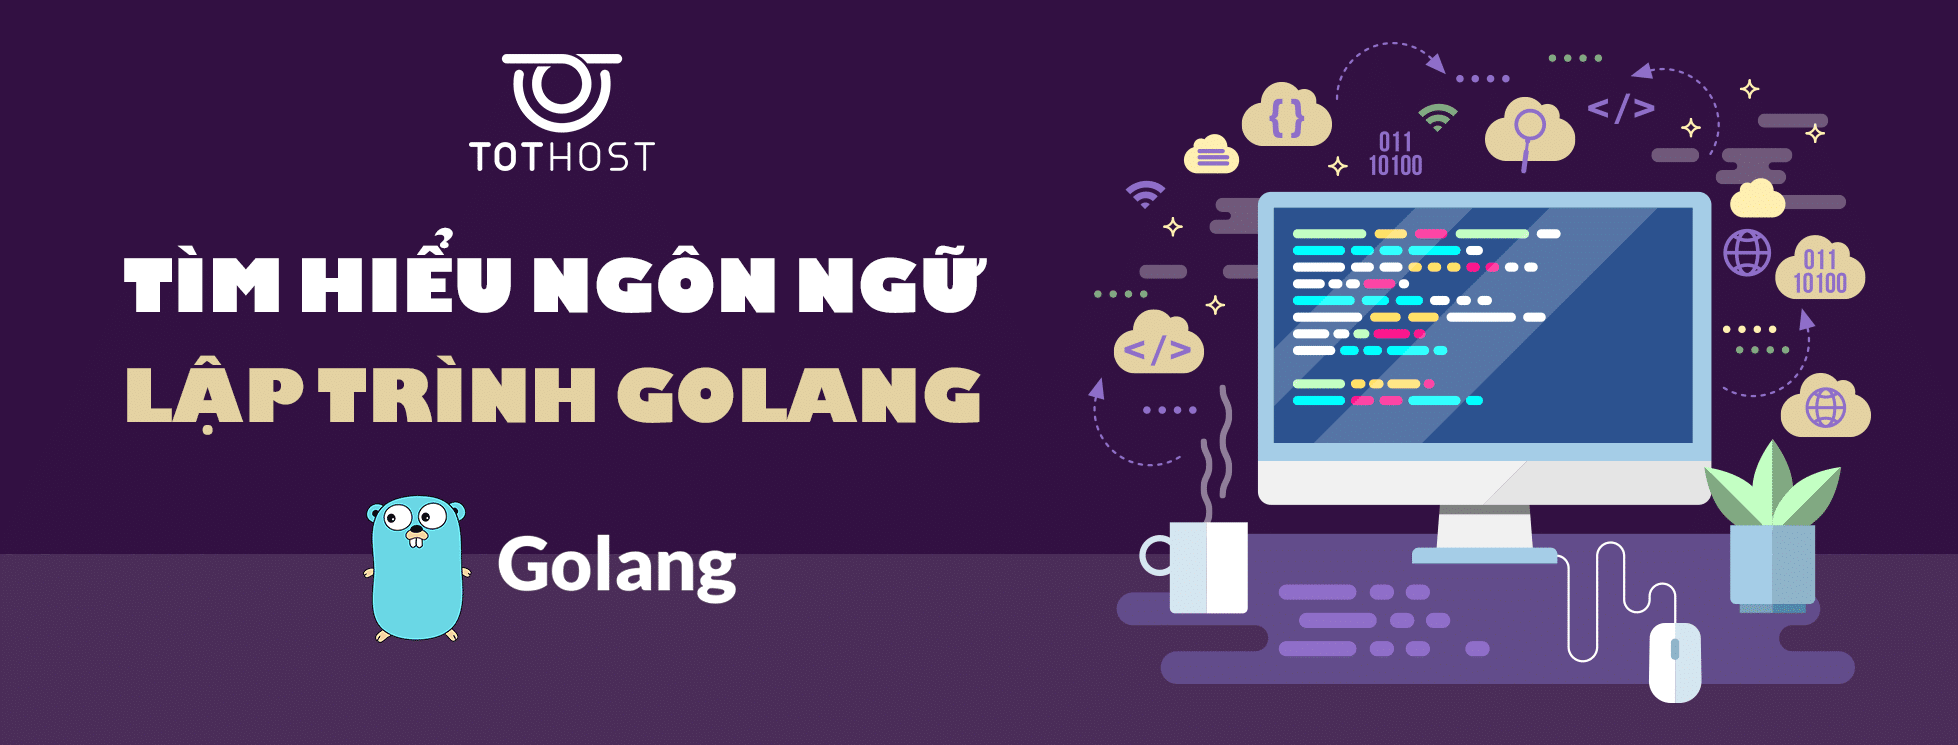 Tìm hiểu về ngôn ngữ lập trình Golang